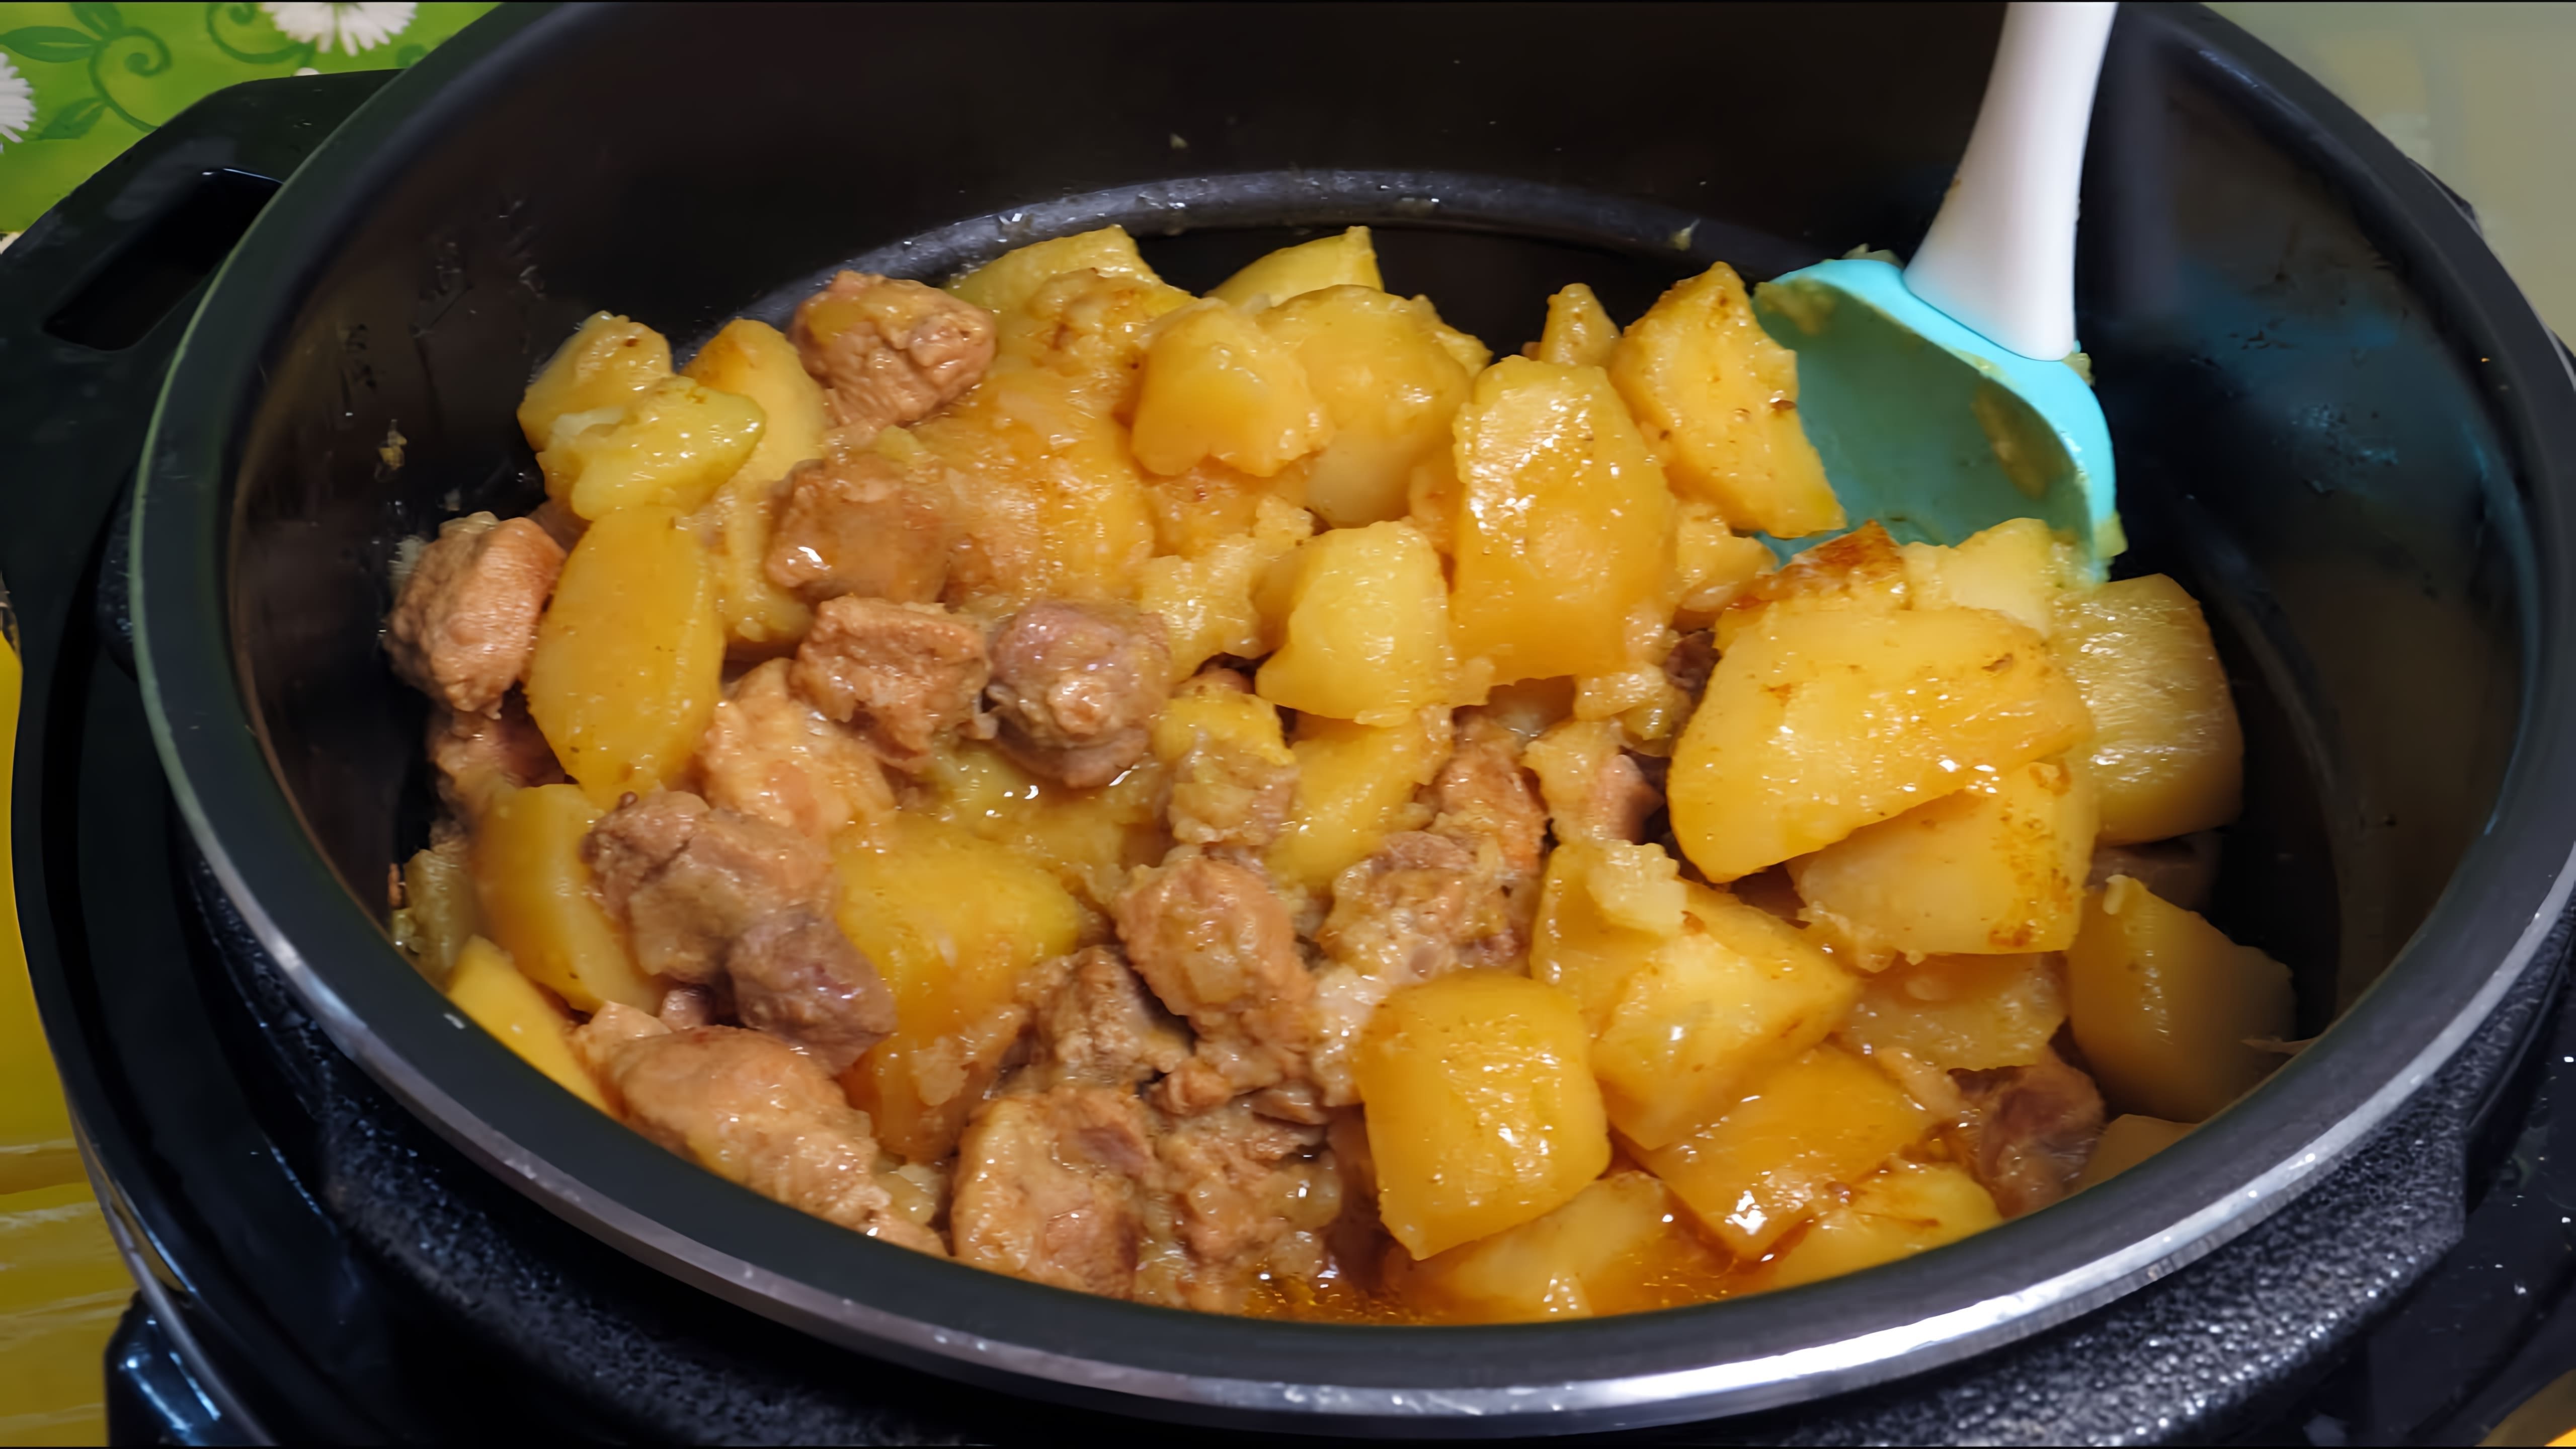 В этом видео демонстрируется процесс приготовления вкусного и сытного блюда - картофеля с мясом в мультиварке MIRTA